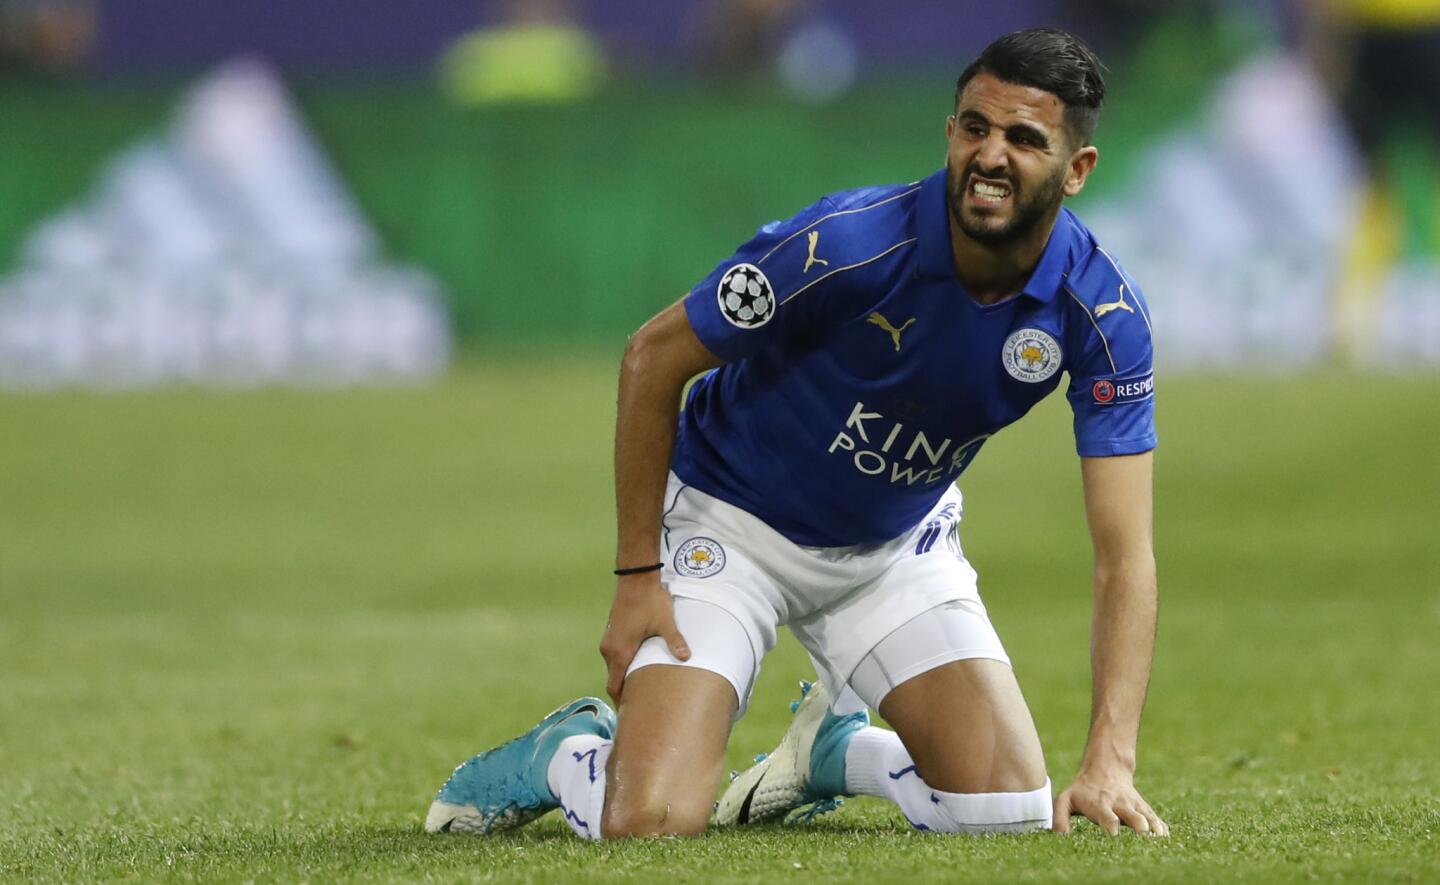 Leicester City's Riyad Mahrez